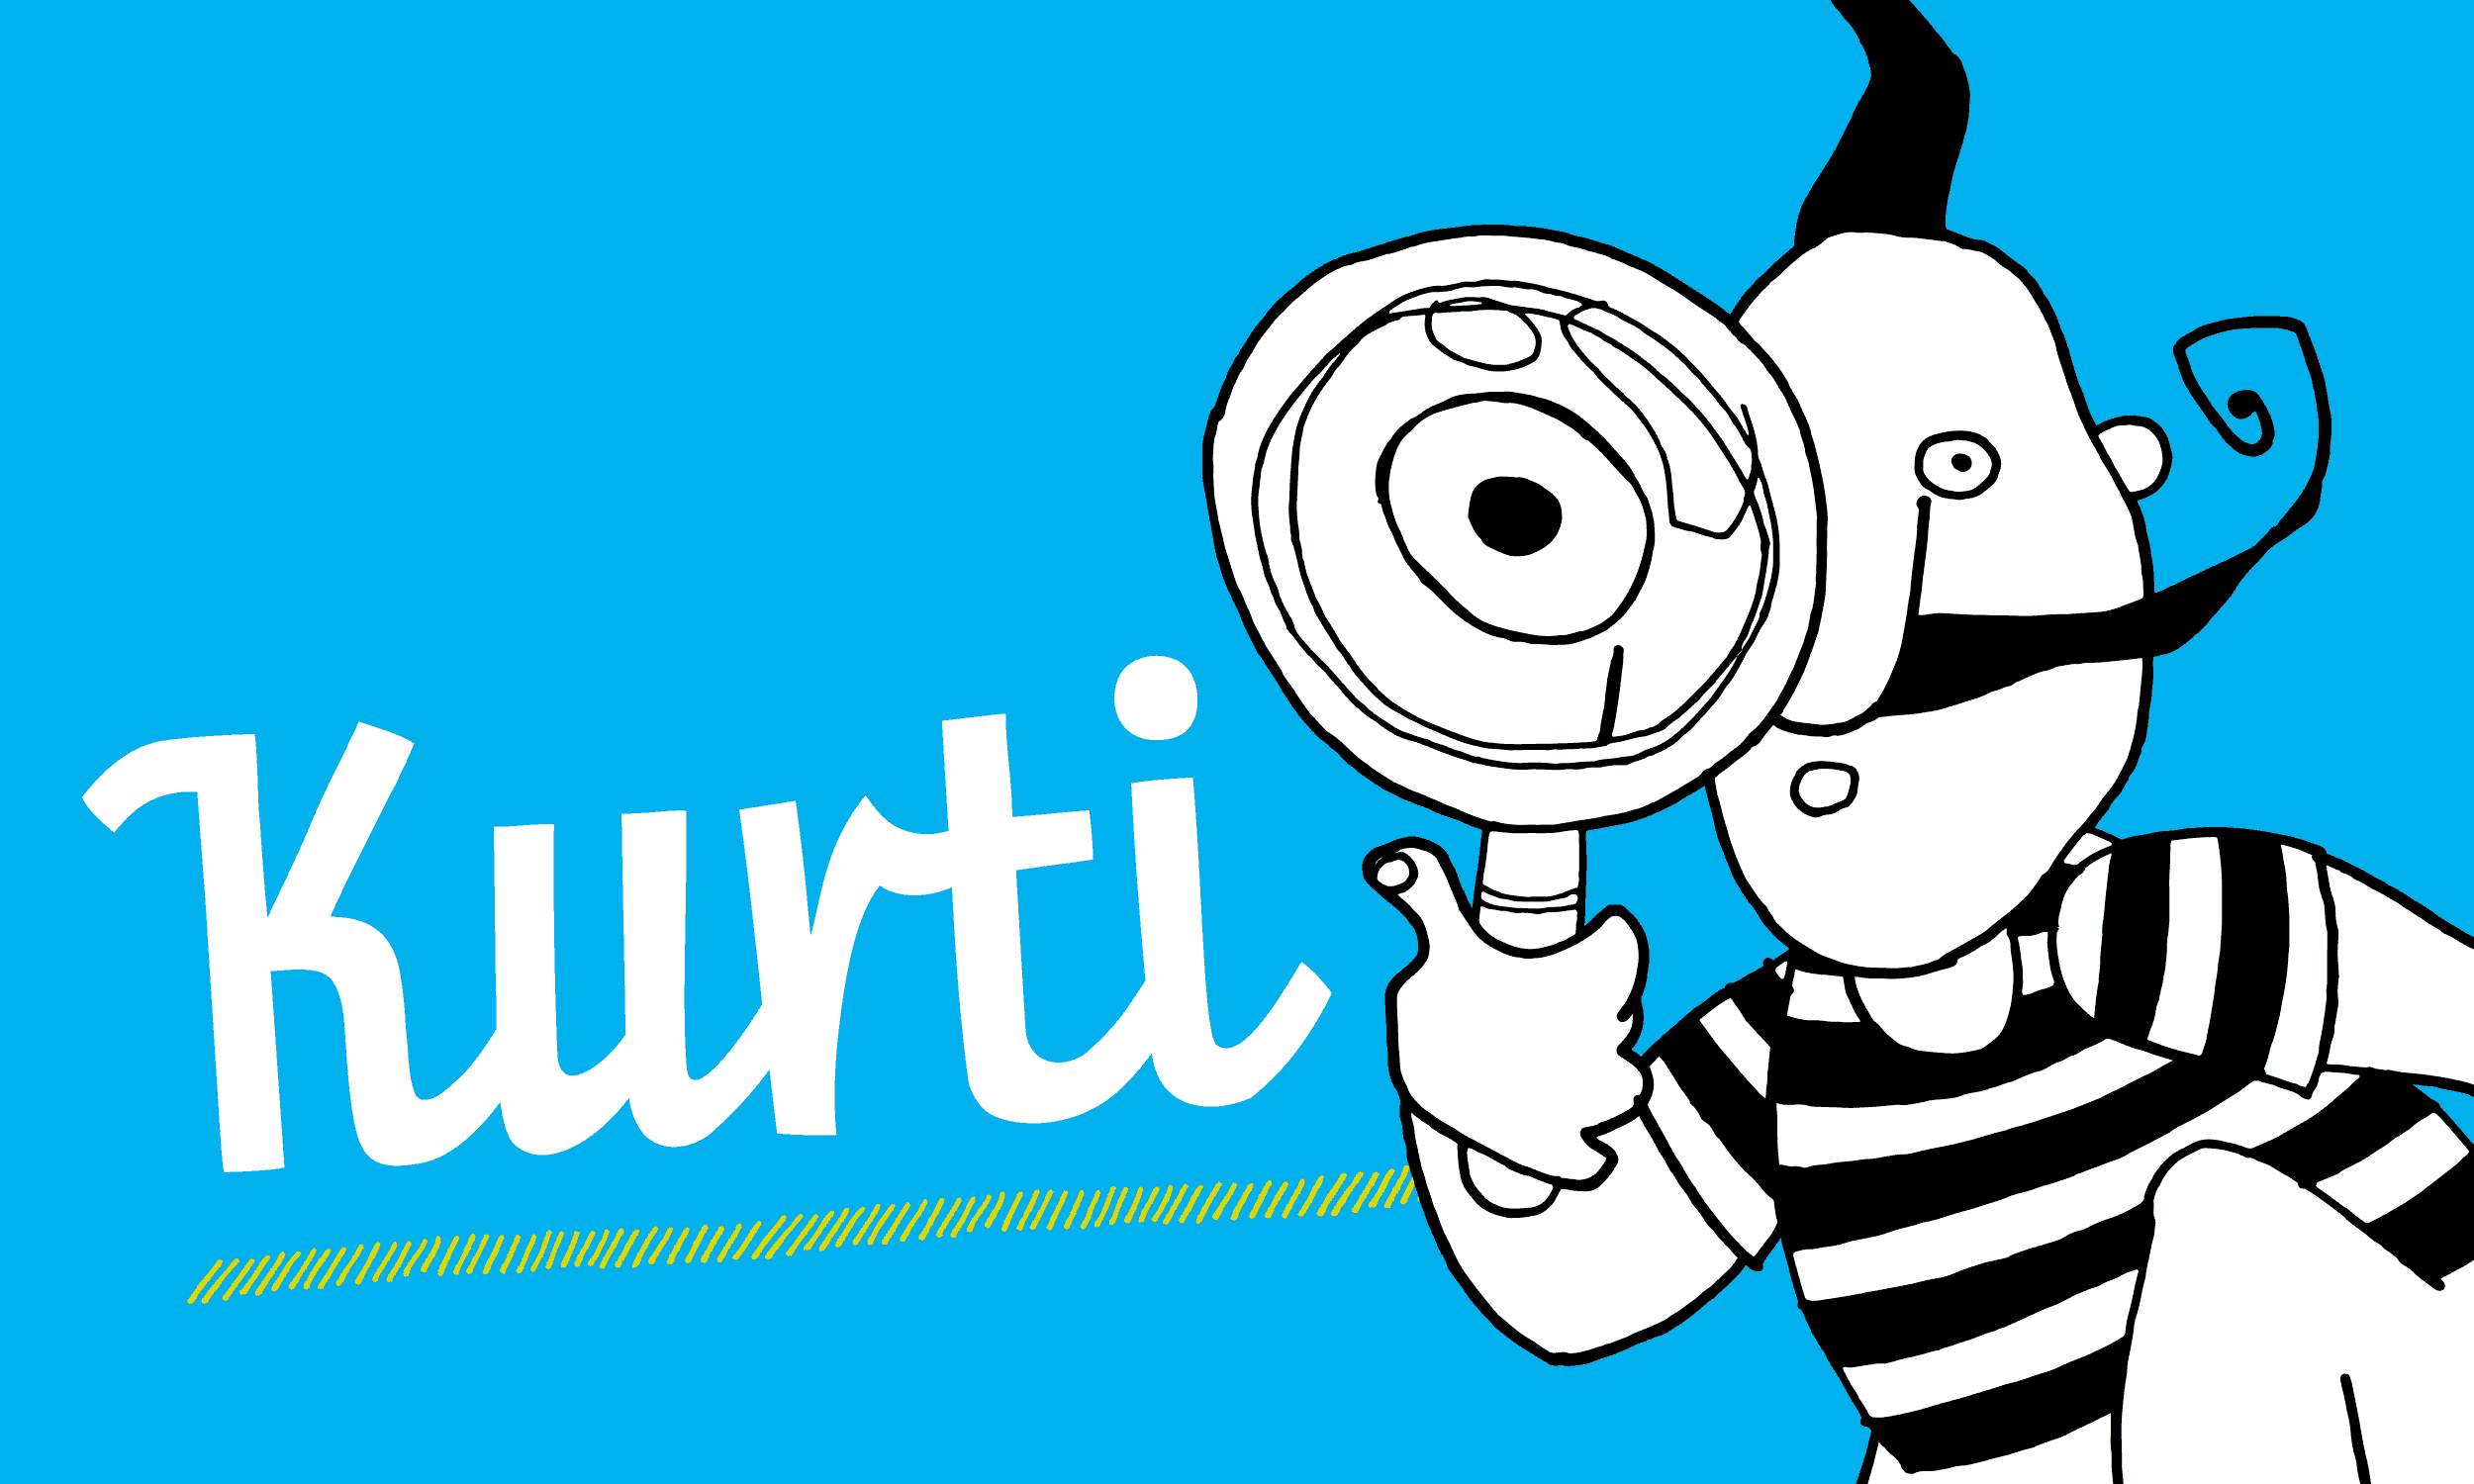 schwarz-weiße Illustration der Figur Kurti auf blauem Grund, links daneben der Schriftzug „Kurti“ in weiß